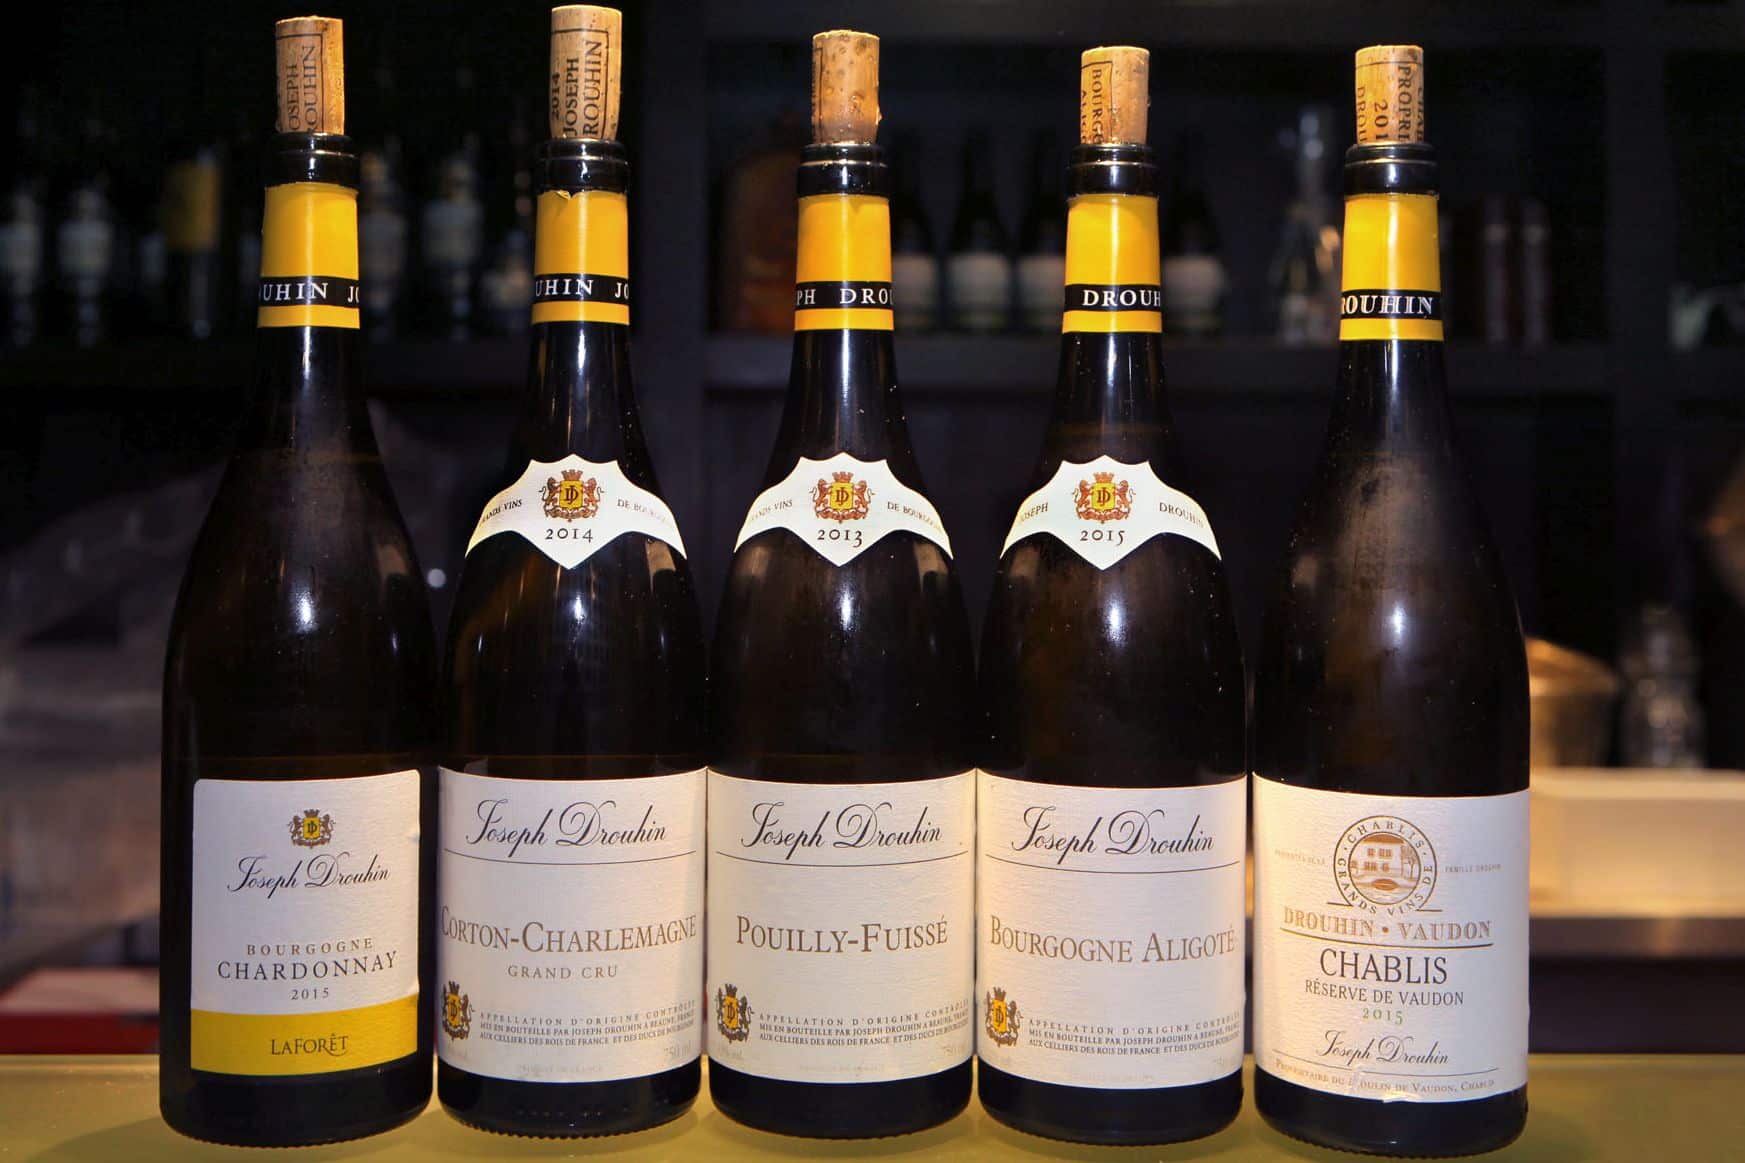 החברה הסקוטית בבעלות טיב טעם מייבאת את יינות Maison Joseph Drouhin מחבל בורגון בצרפת. צילום דוד סילברמן dpsimages